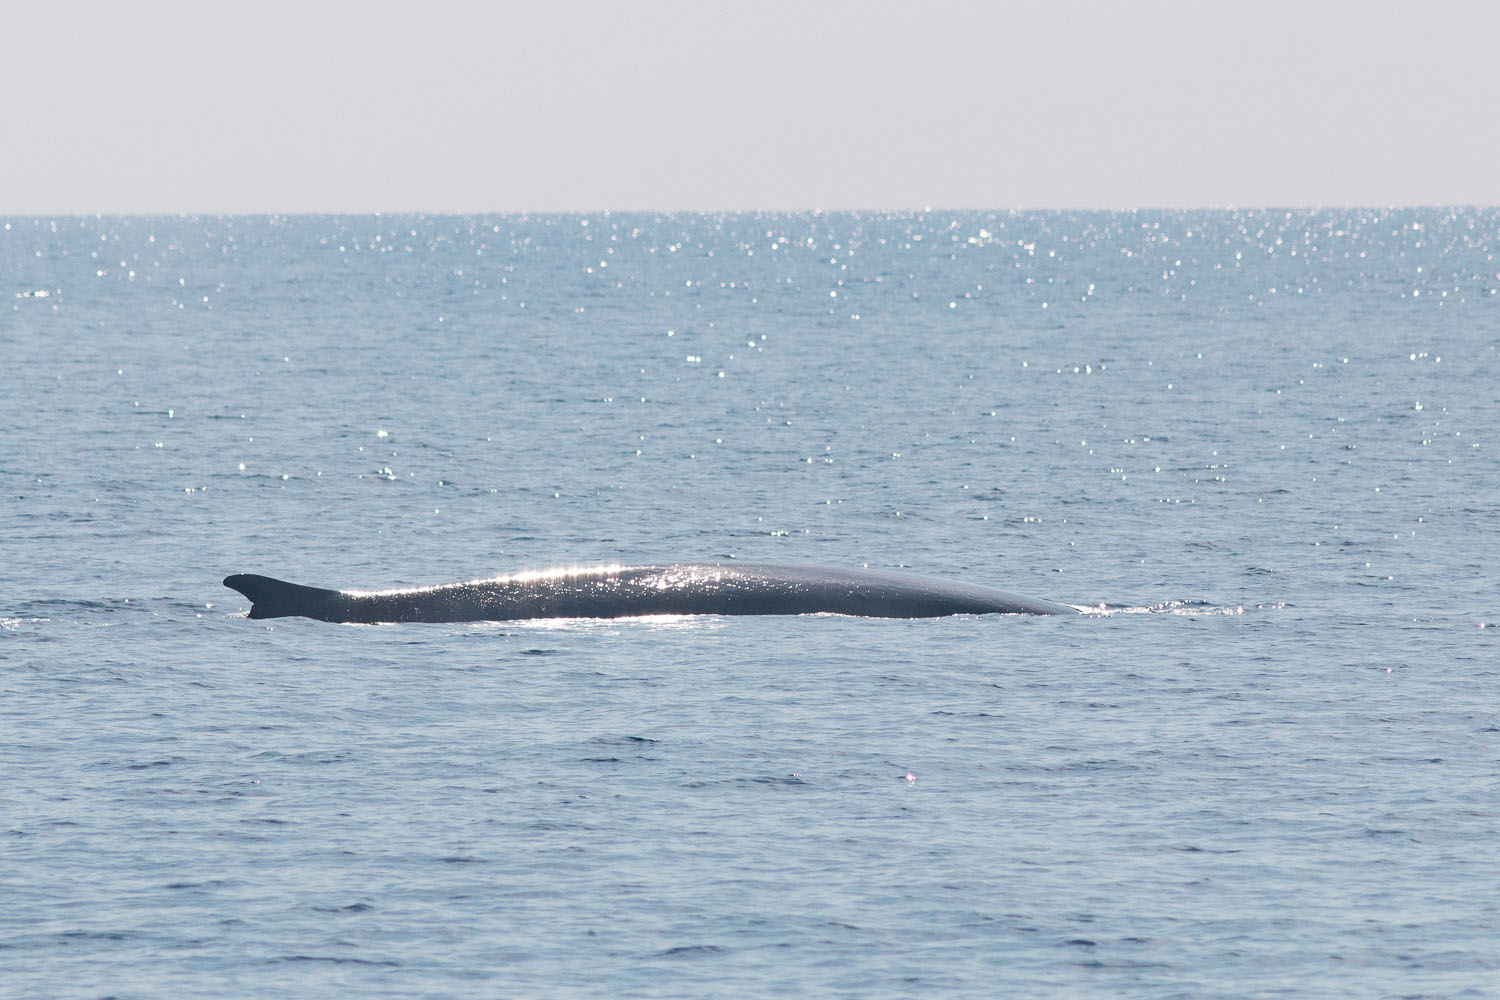 voyage scientifique - cetaces de mediterranee vers la corse a la voile 4